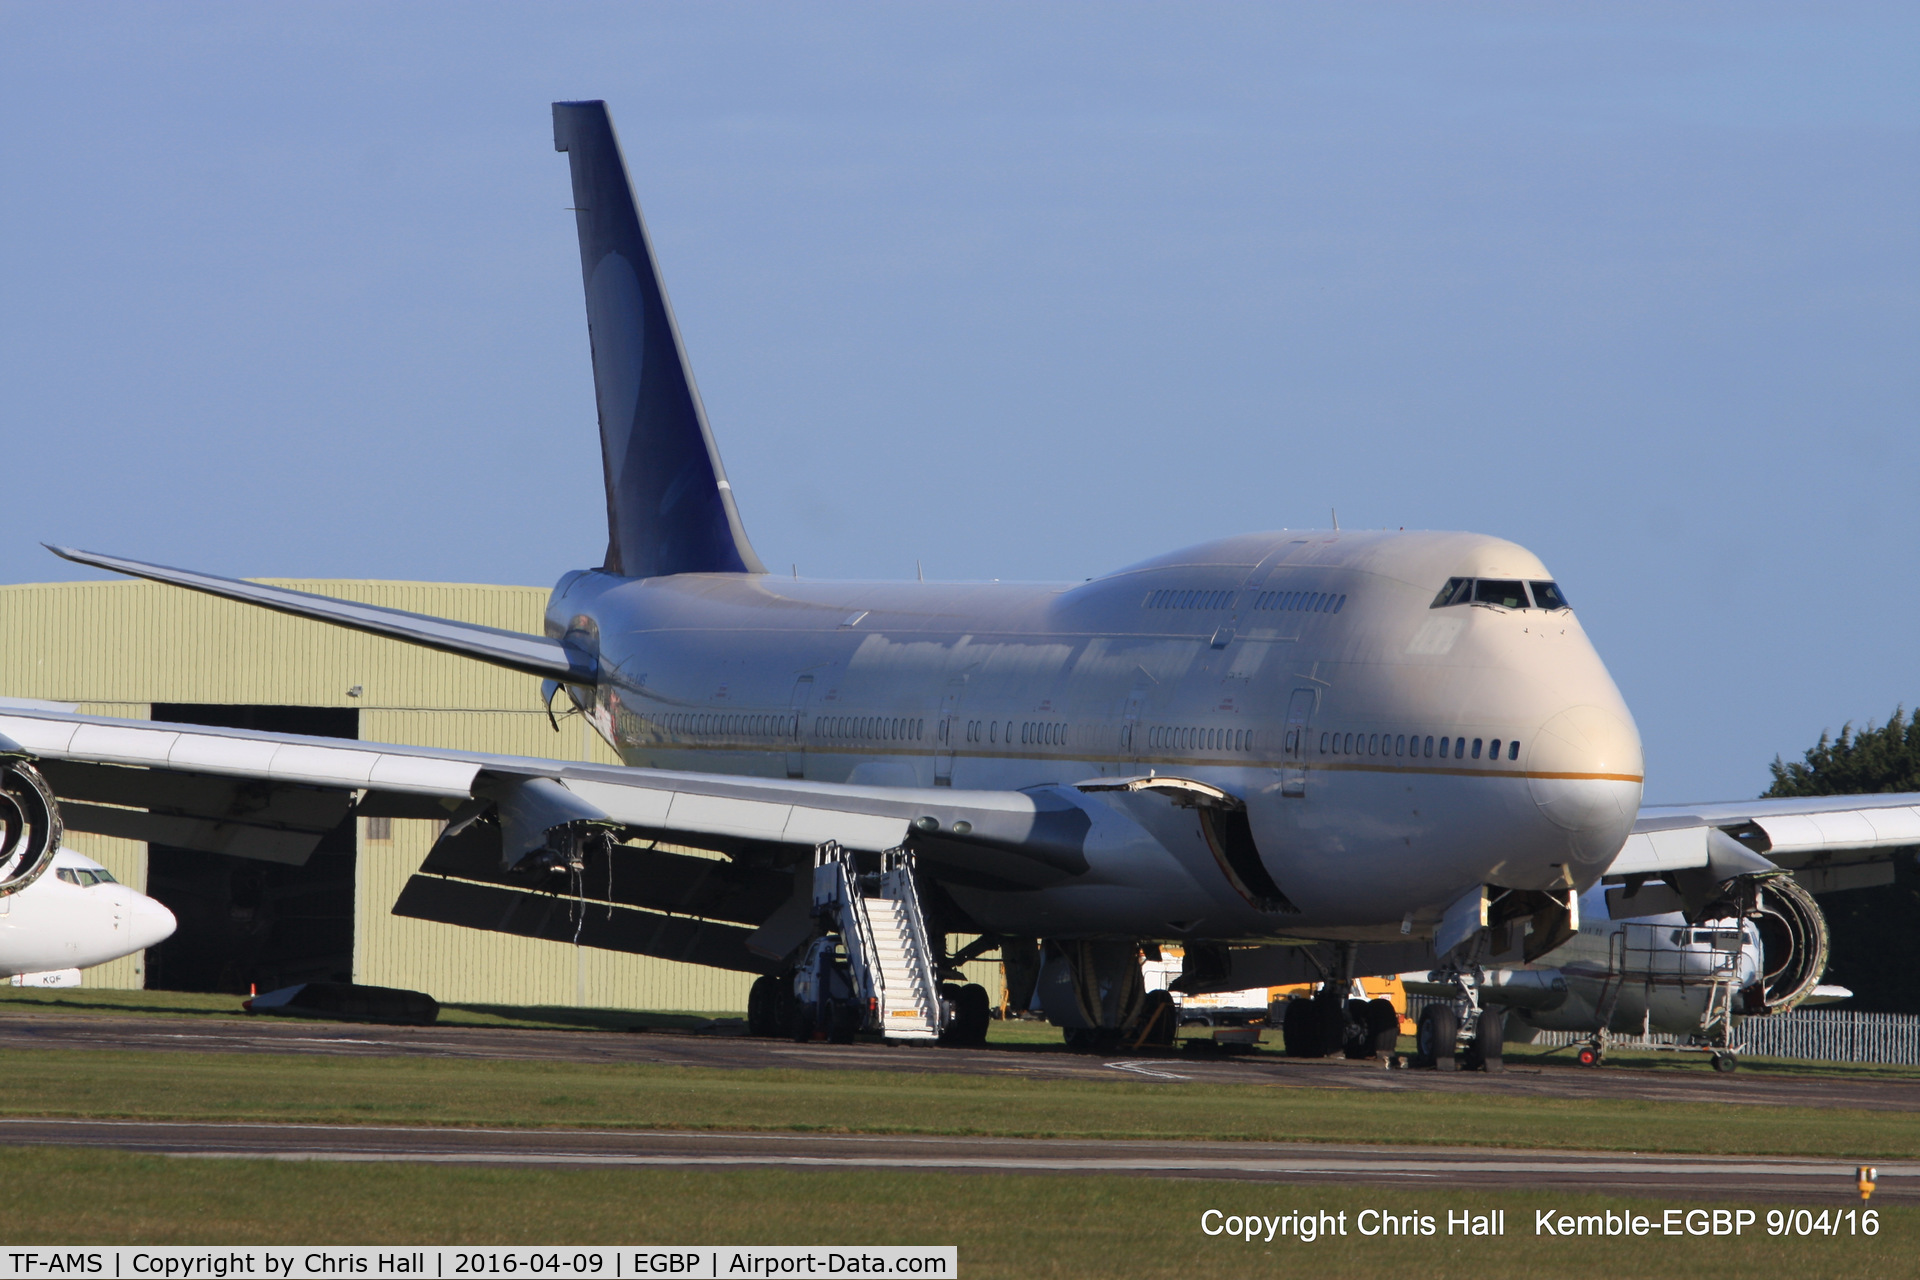 TF-AMS, 1990 Boeing 747-481 C/N 24920, ex Air Atlanta Icelandic/Saudi Arabian Airlines in storage at Kemble